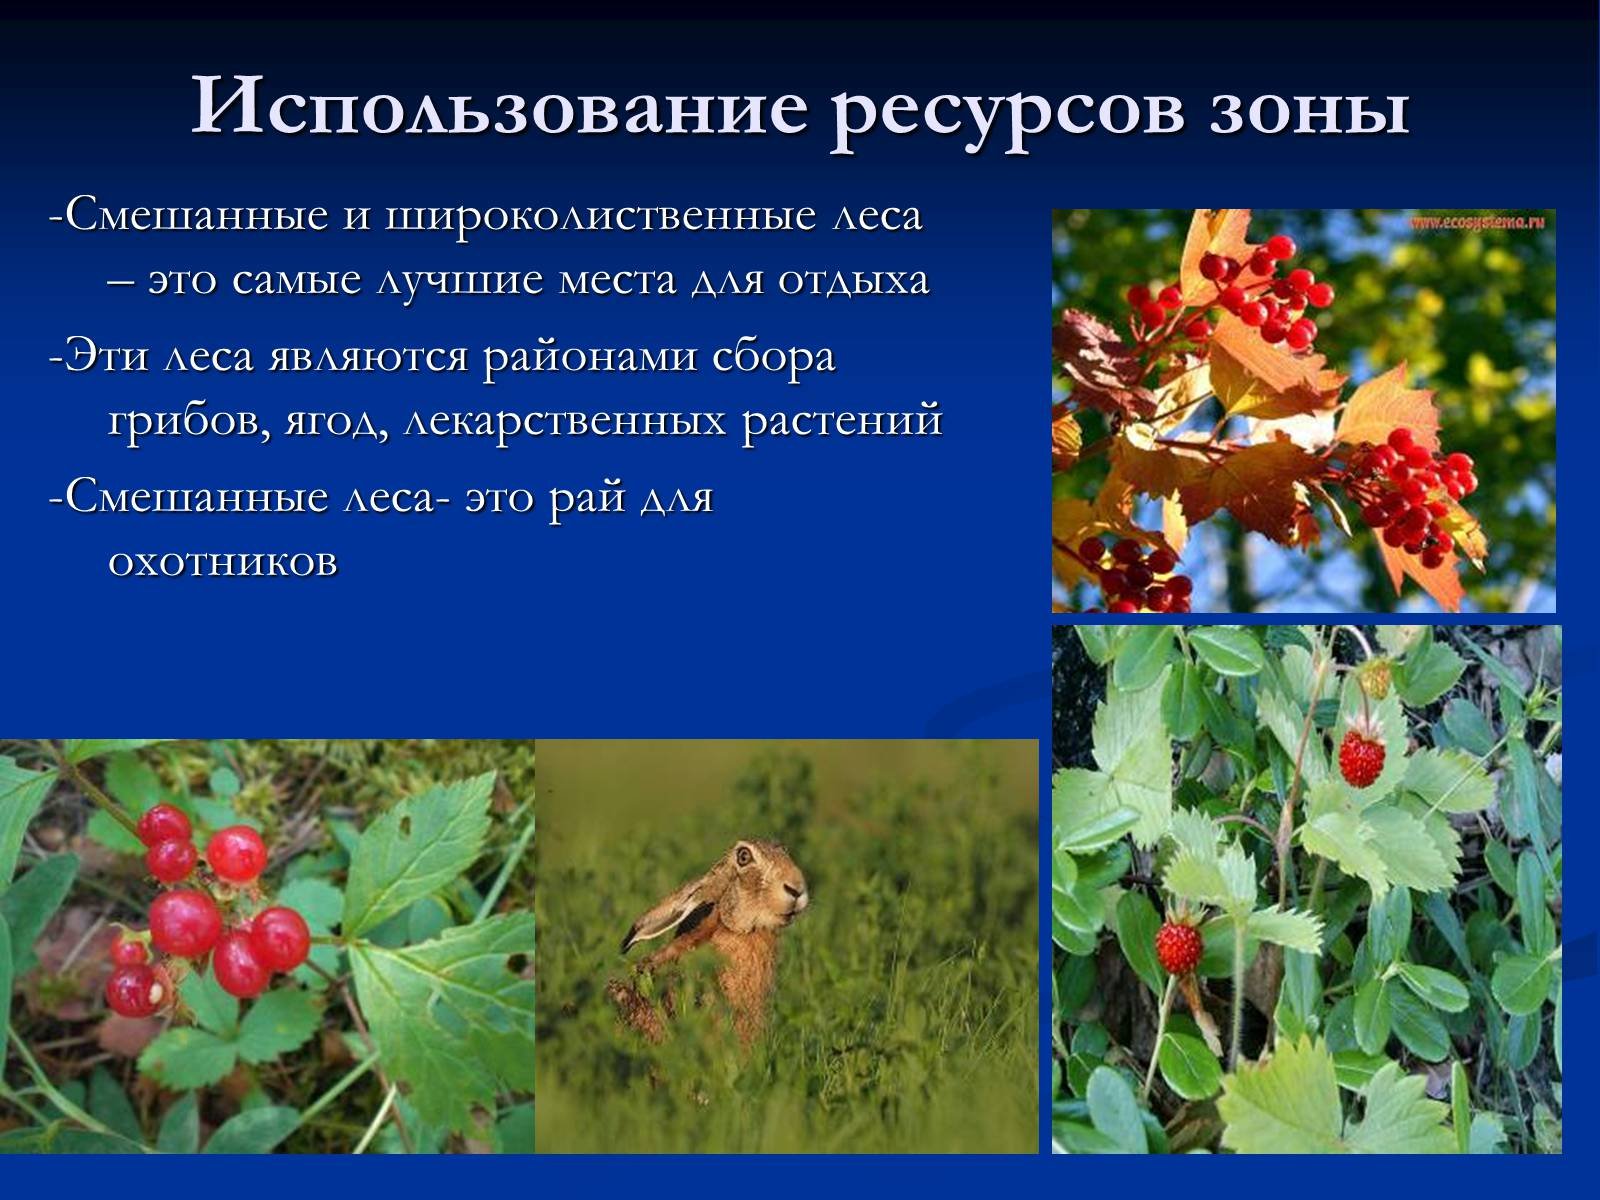 Богатство лесной зоны. Растительность смешанных и широколиственных лесов в России. Смешанные и широколиственные леса растения. Растения смешанных и широколиственных лесов. Растения зоны смешанных лесов.